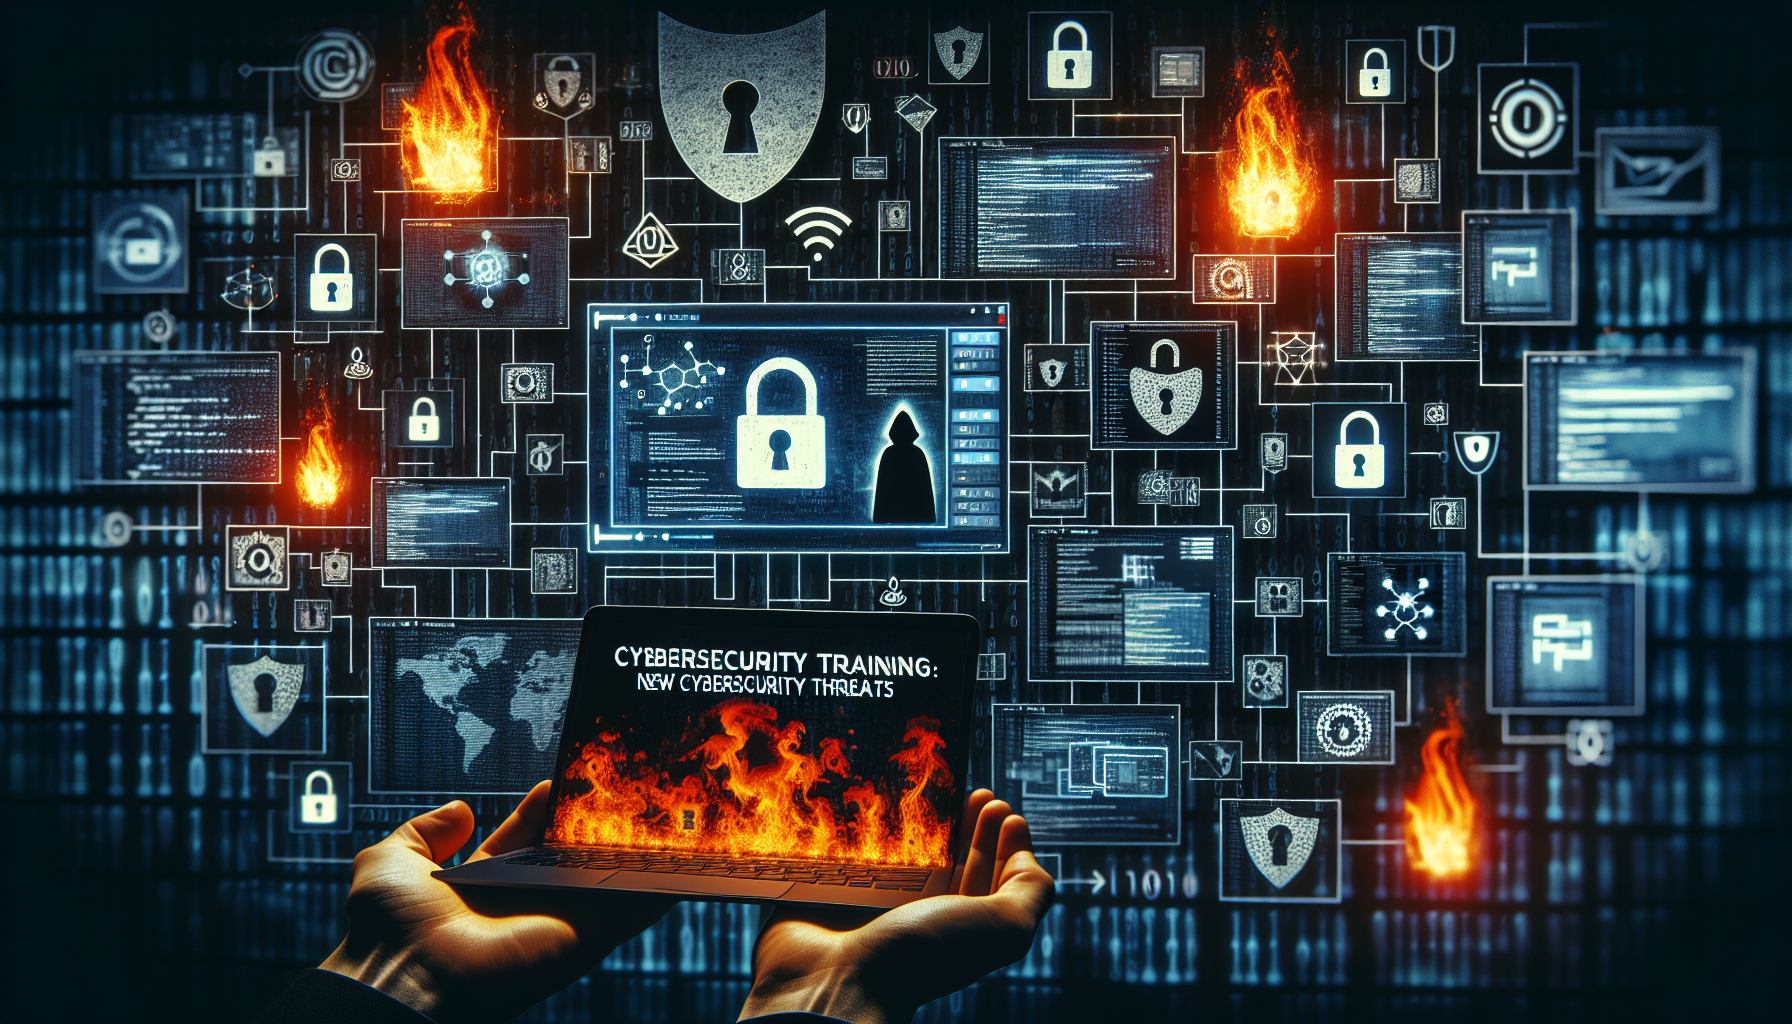 découvrez les nouvelles menaces en cybersécurité et apprenez à vous en protéger avec la formation en cybersécurité.